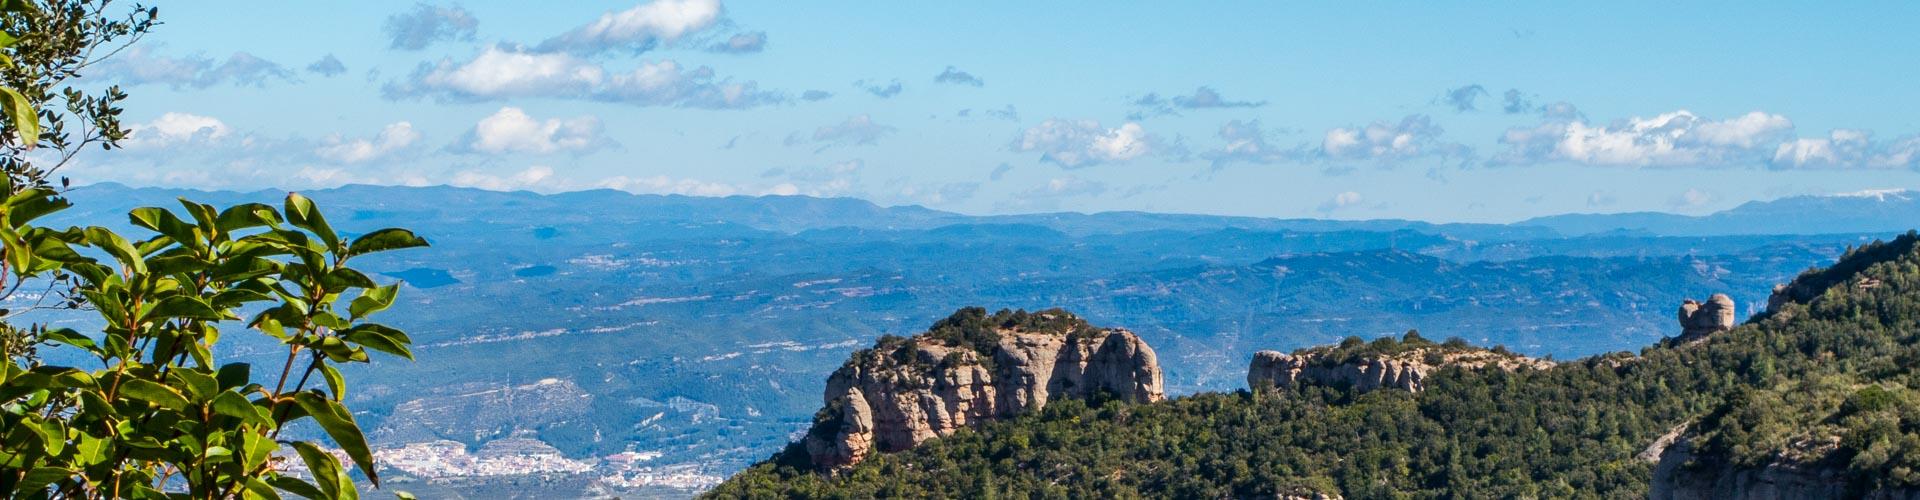 Vistes al Bages i Pirineu des de Montserrat. El Bruc.